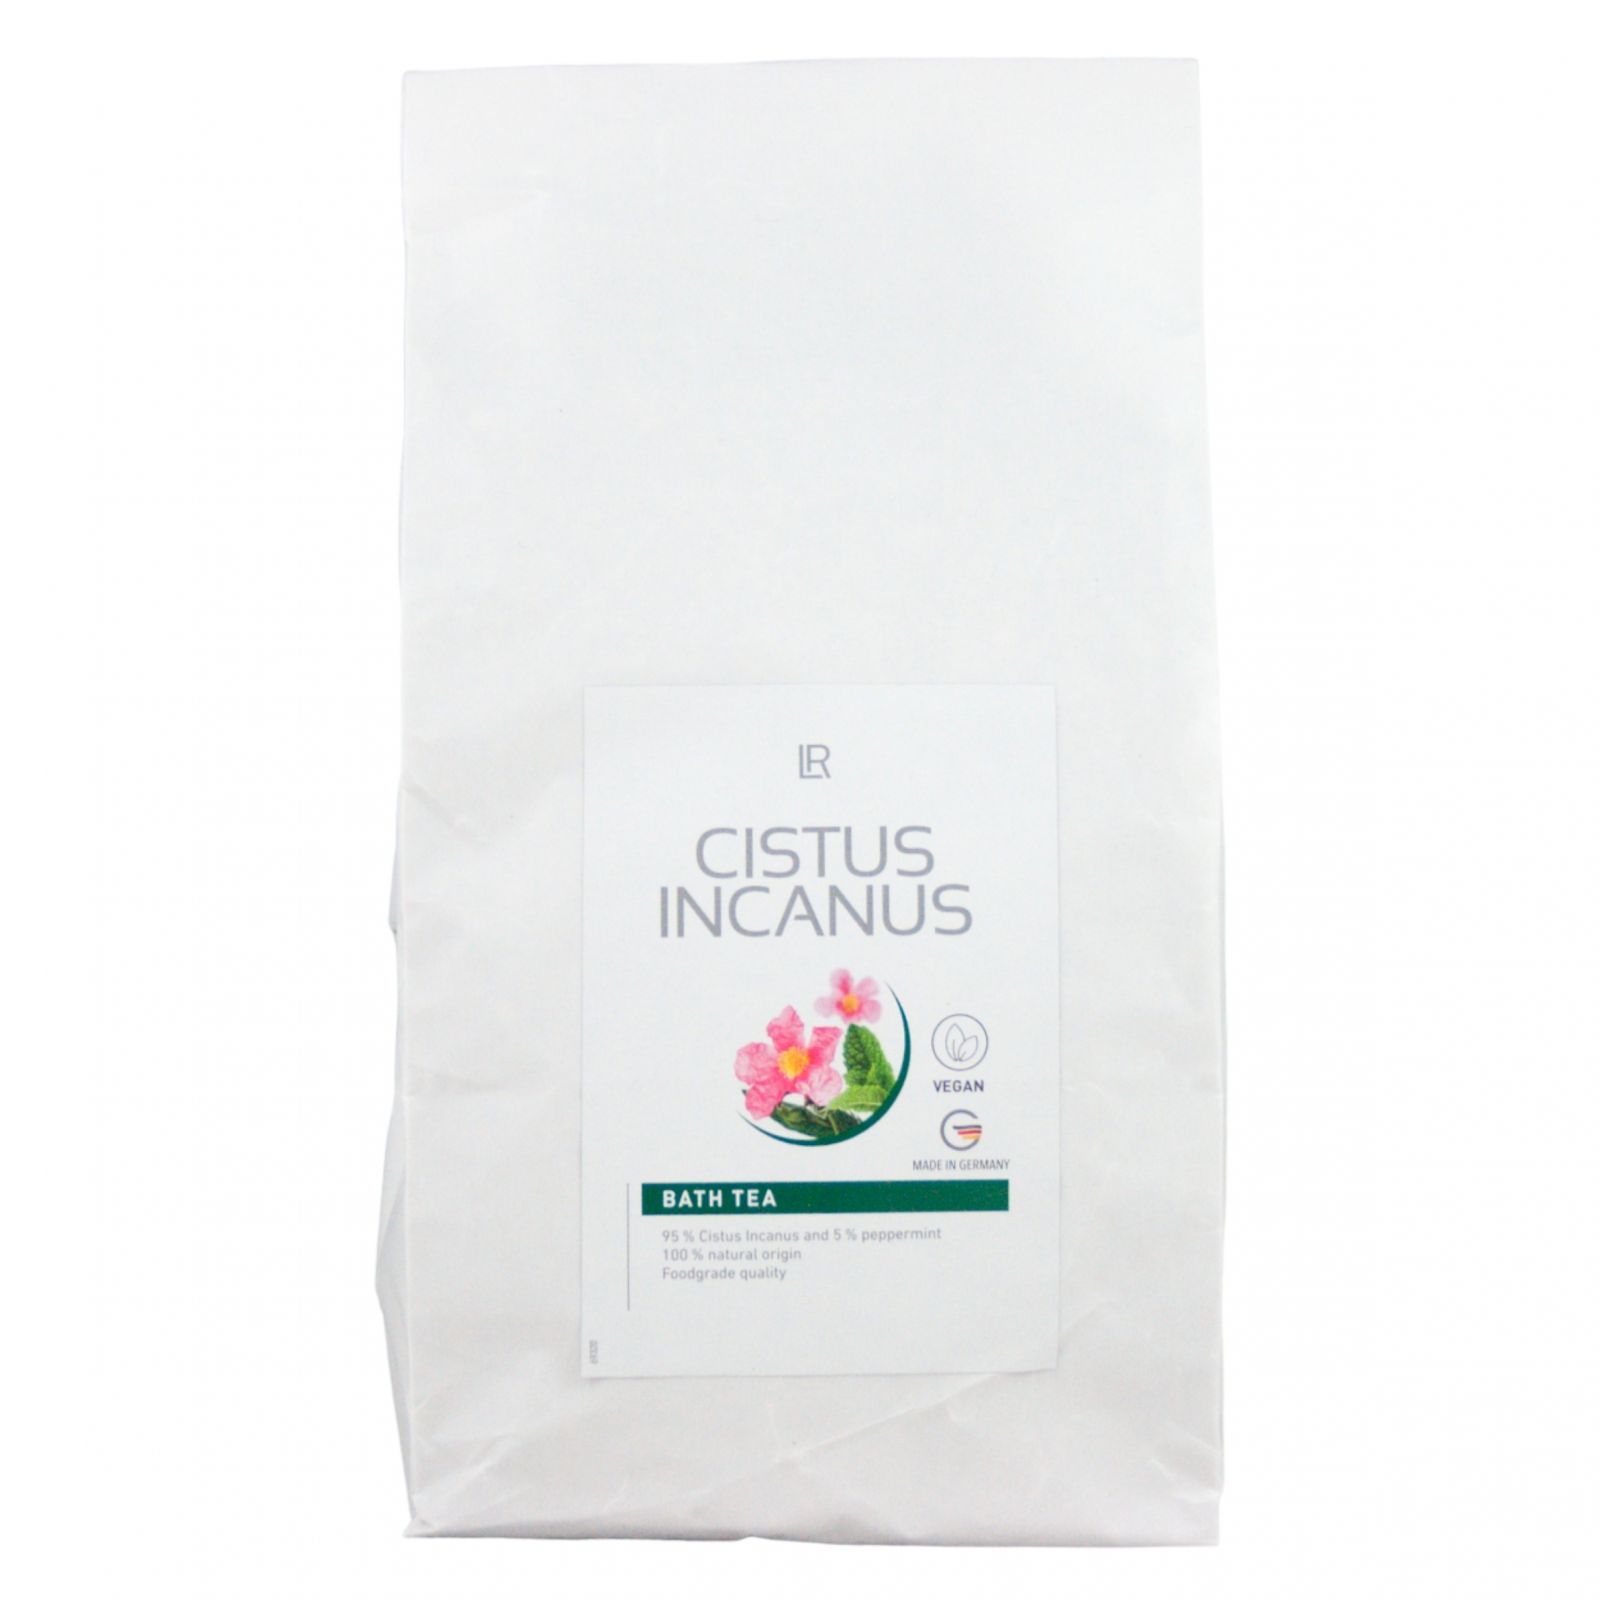 LR Cistus Incanus Bath tea - Koupelový čaj 250 g